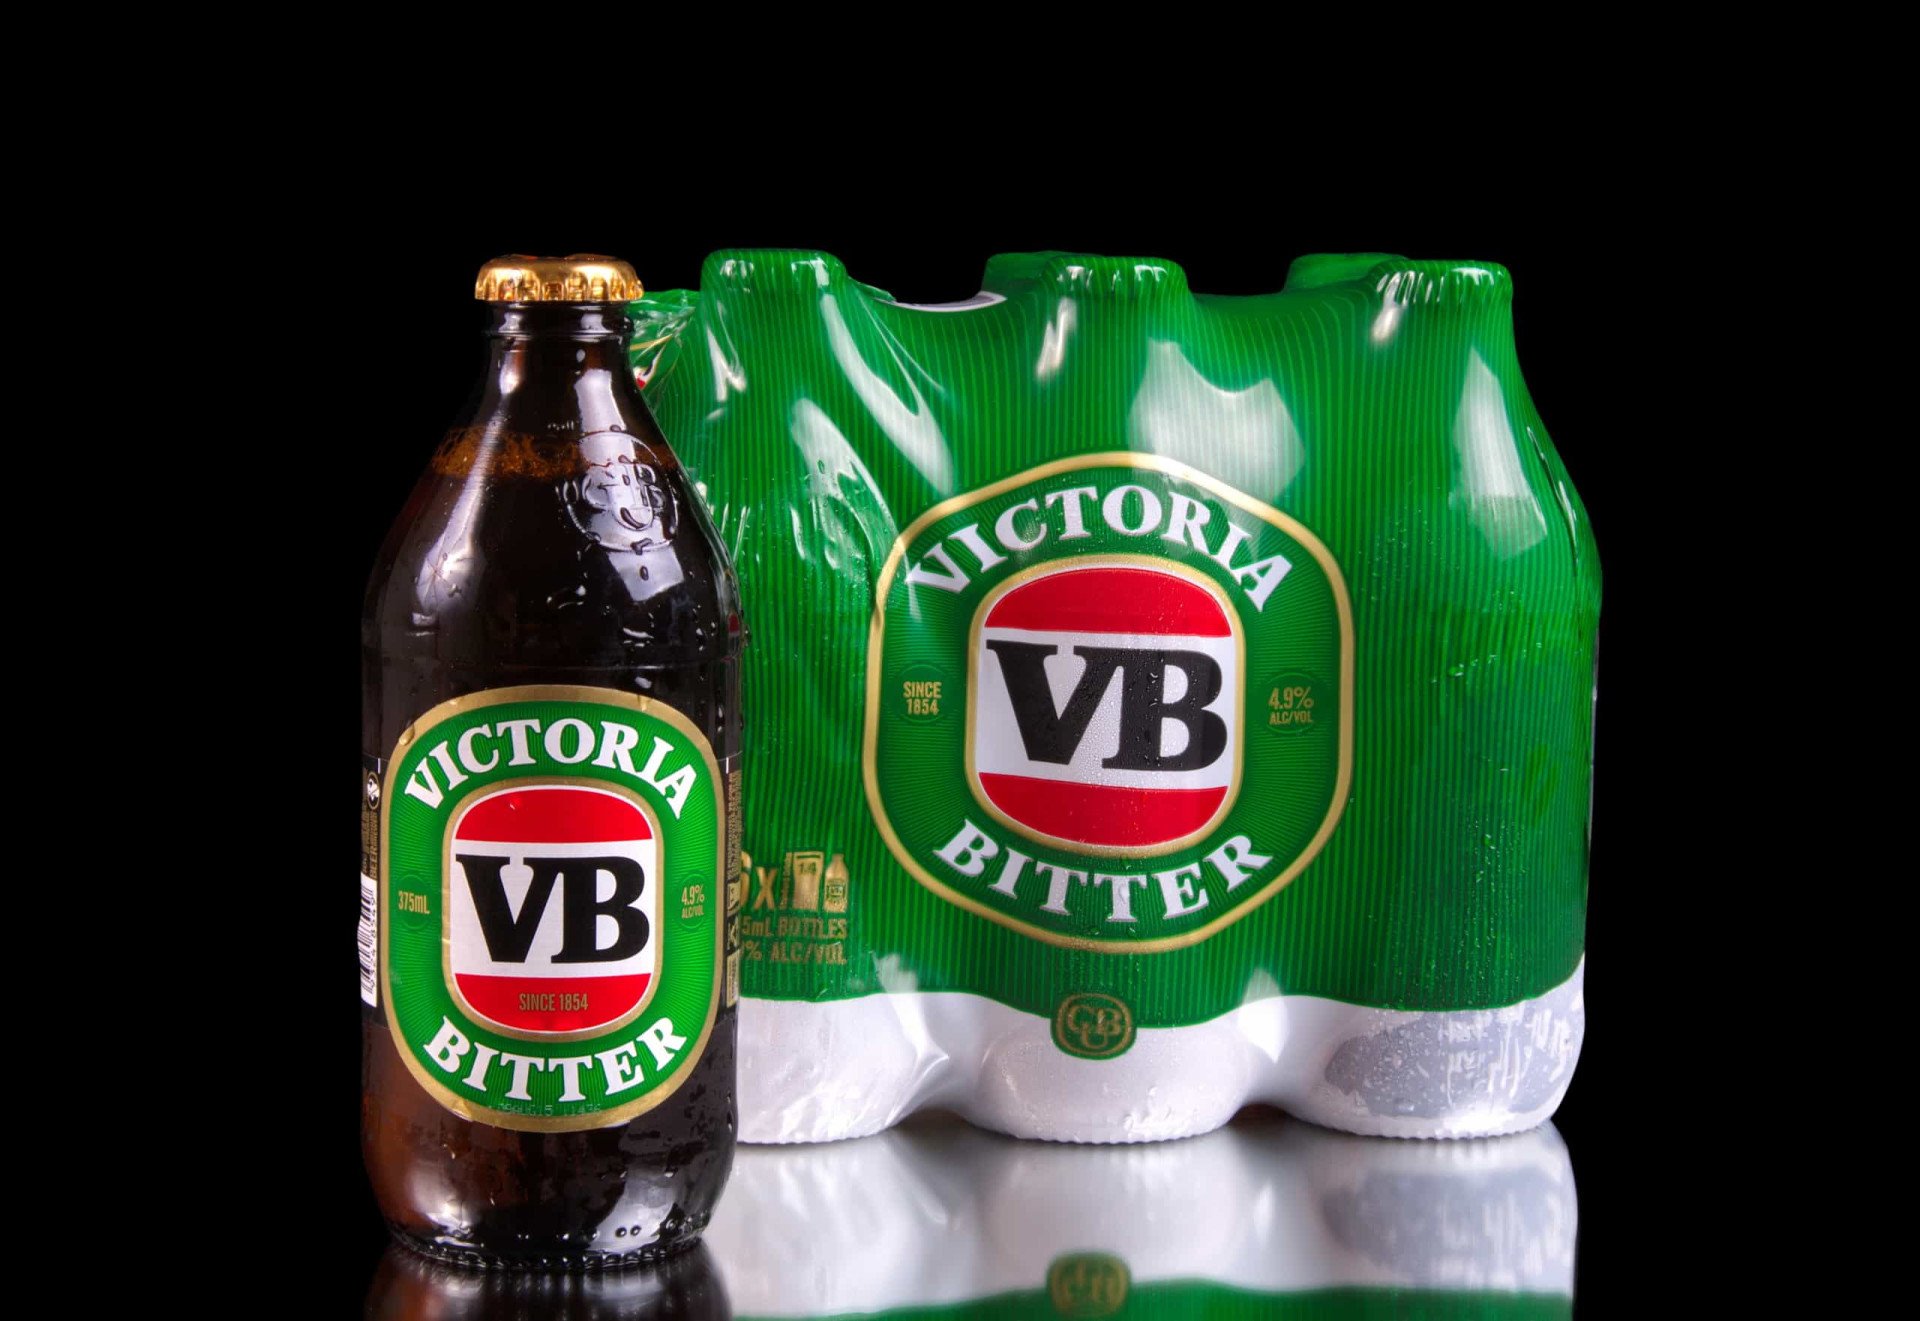 La Victoria Bitter est une bière blonde, en dépit de son nom qui signifie "amer". Bien que la grande majorité des ventes aient lieu en Australie, elle est également disponible en Nouvelle-Zélande, à Bali en Indonésie et au Royaume-Uni.<p><a href="https://www.msn.com/fr-fr/community/channel/vid-7xx8mnucu55yw63we9va2gwr7uihbxwc68fxqp25x6tg4ftibpra?cvid=94631541bc0f4f89bfd59158d696ad7e">Suivez-nous et accédez tous les jours à du contenu exclusif</a></p>